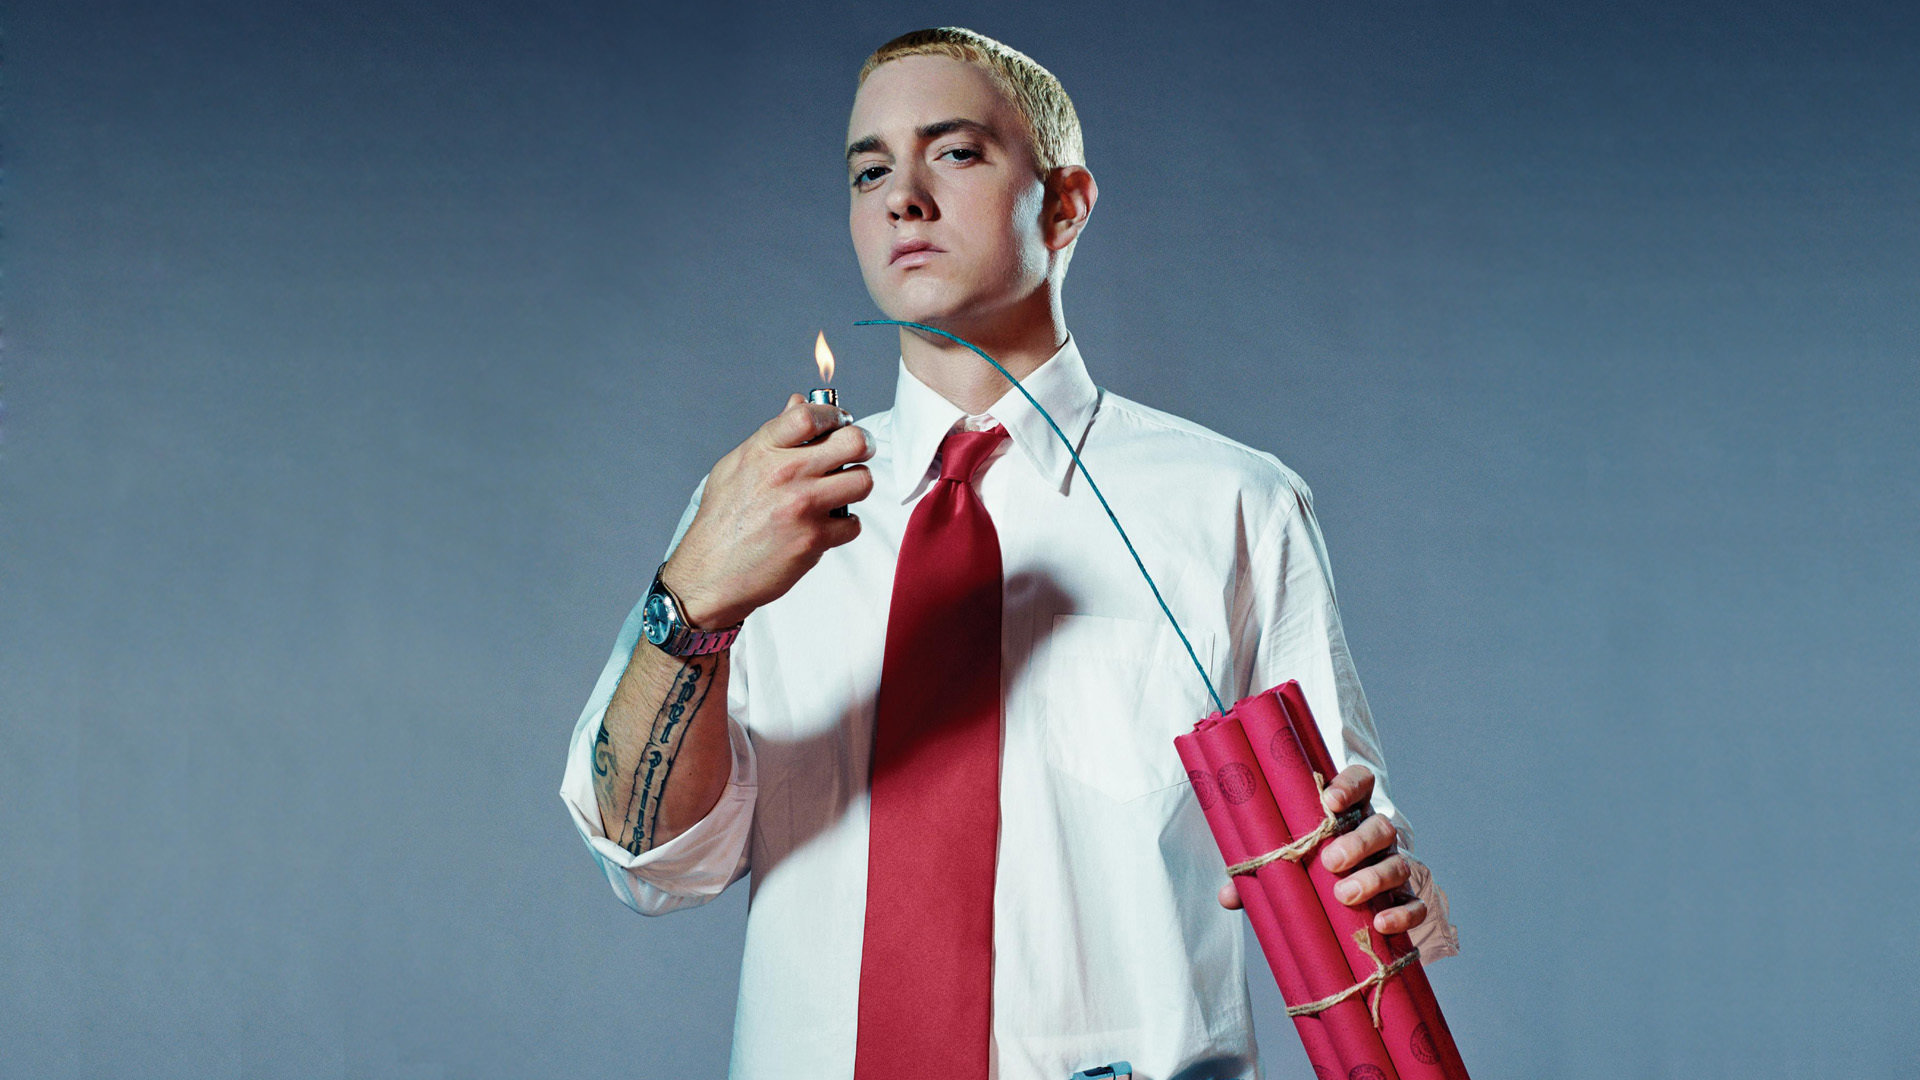 Free download Eminem background ID:452199 full hd for desktop